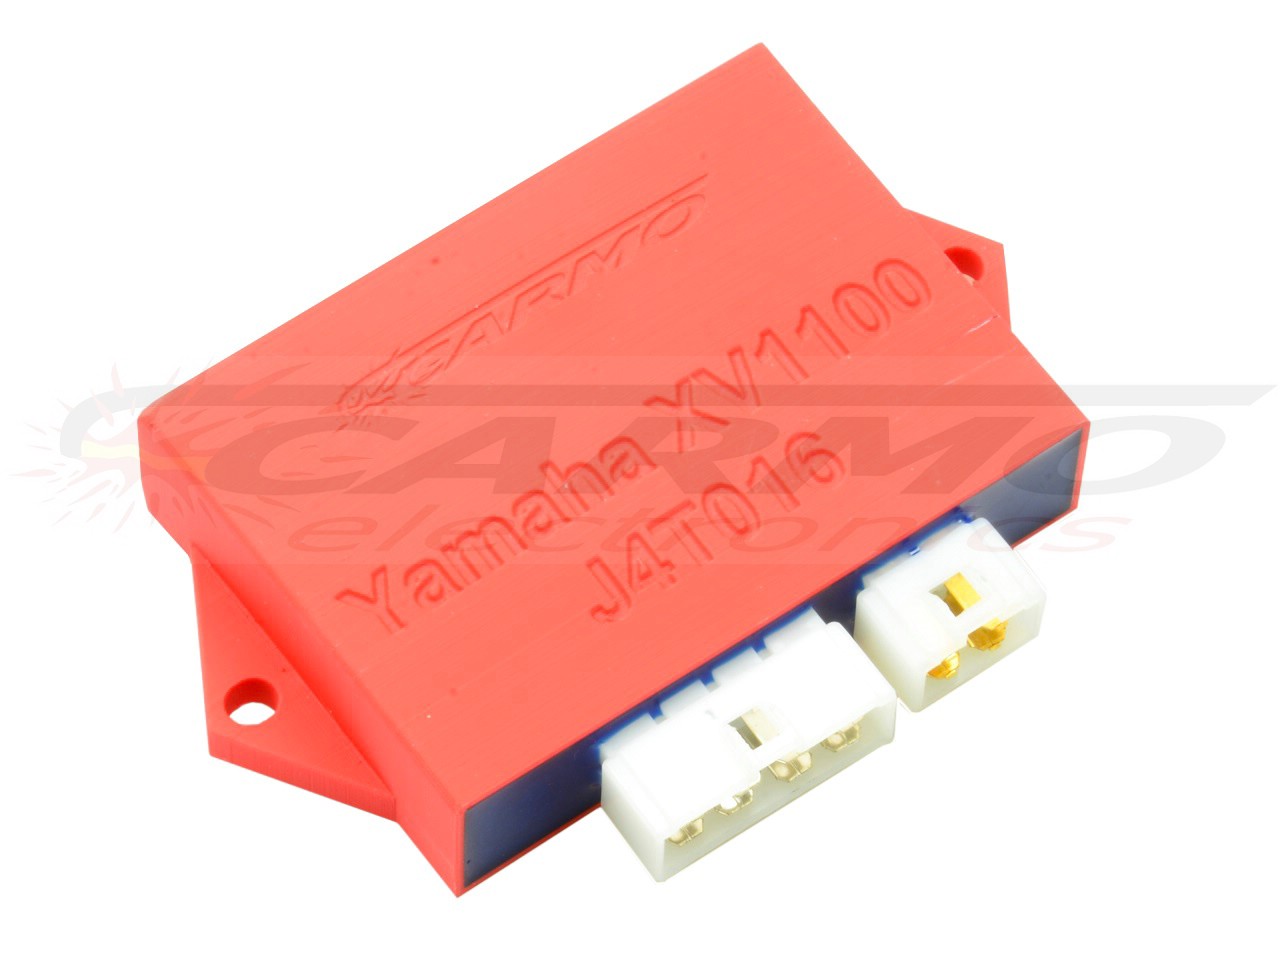 Yamaha XV1100 Virago TCI CDI dispositif de commande boîte noire (J4T016, 1TA-82305-20-00) - Cliquez sur l'image pour la fermer